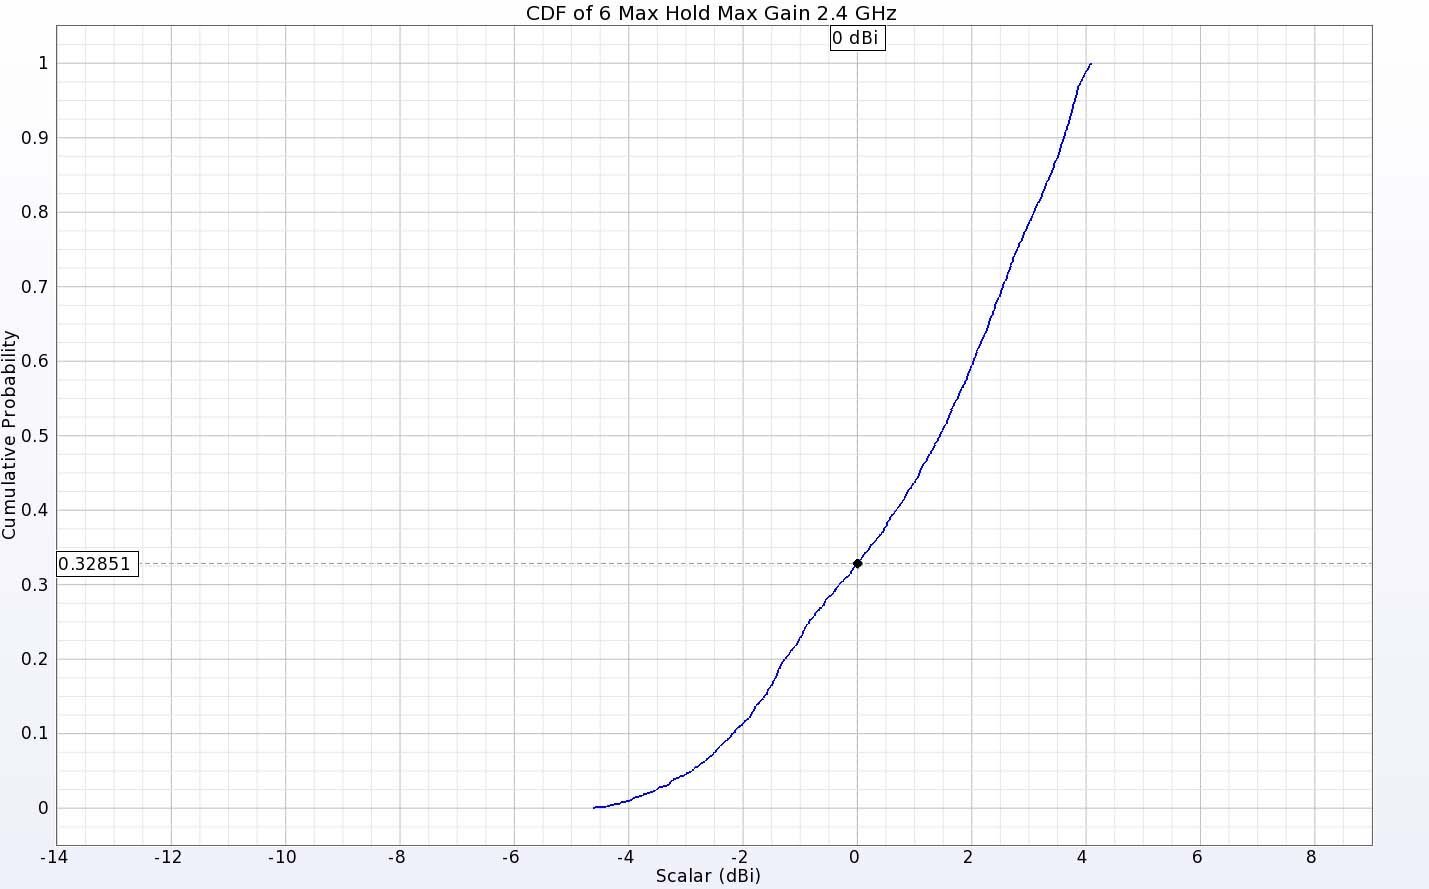 图 10：两根天线在 2.4 GHz 频率下的 EIRP CDF 图显示，约有 67% 的方向出现正增益。